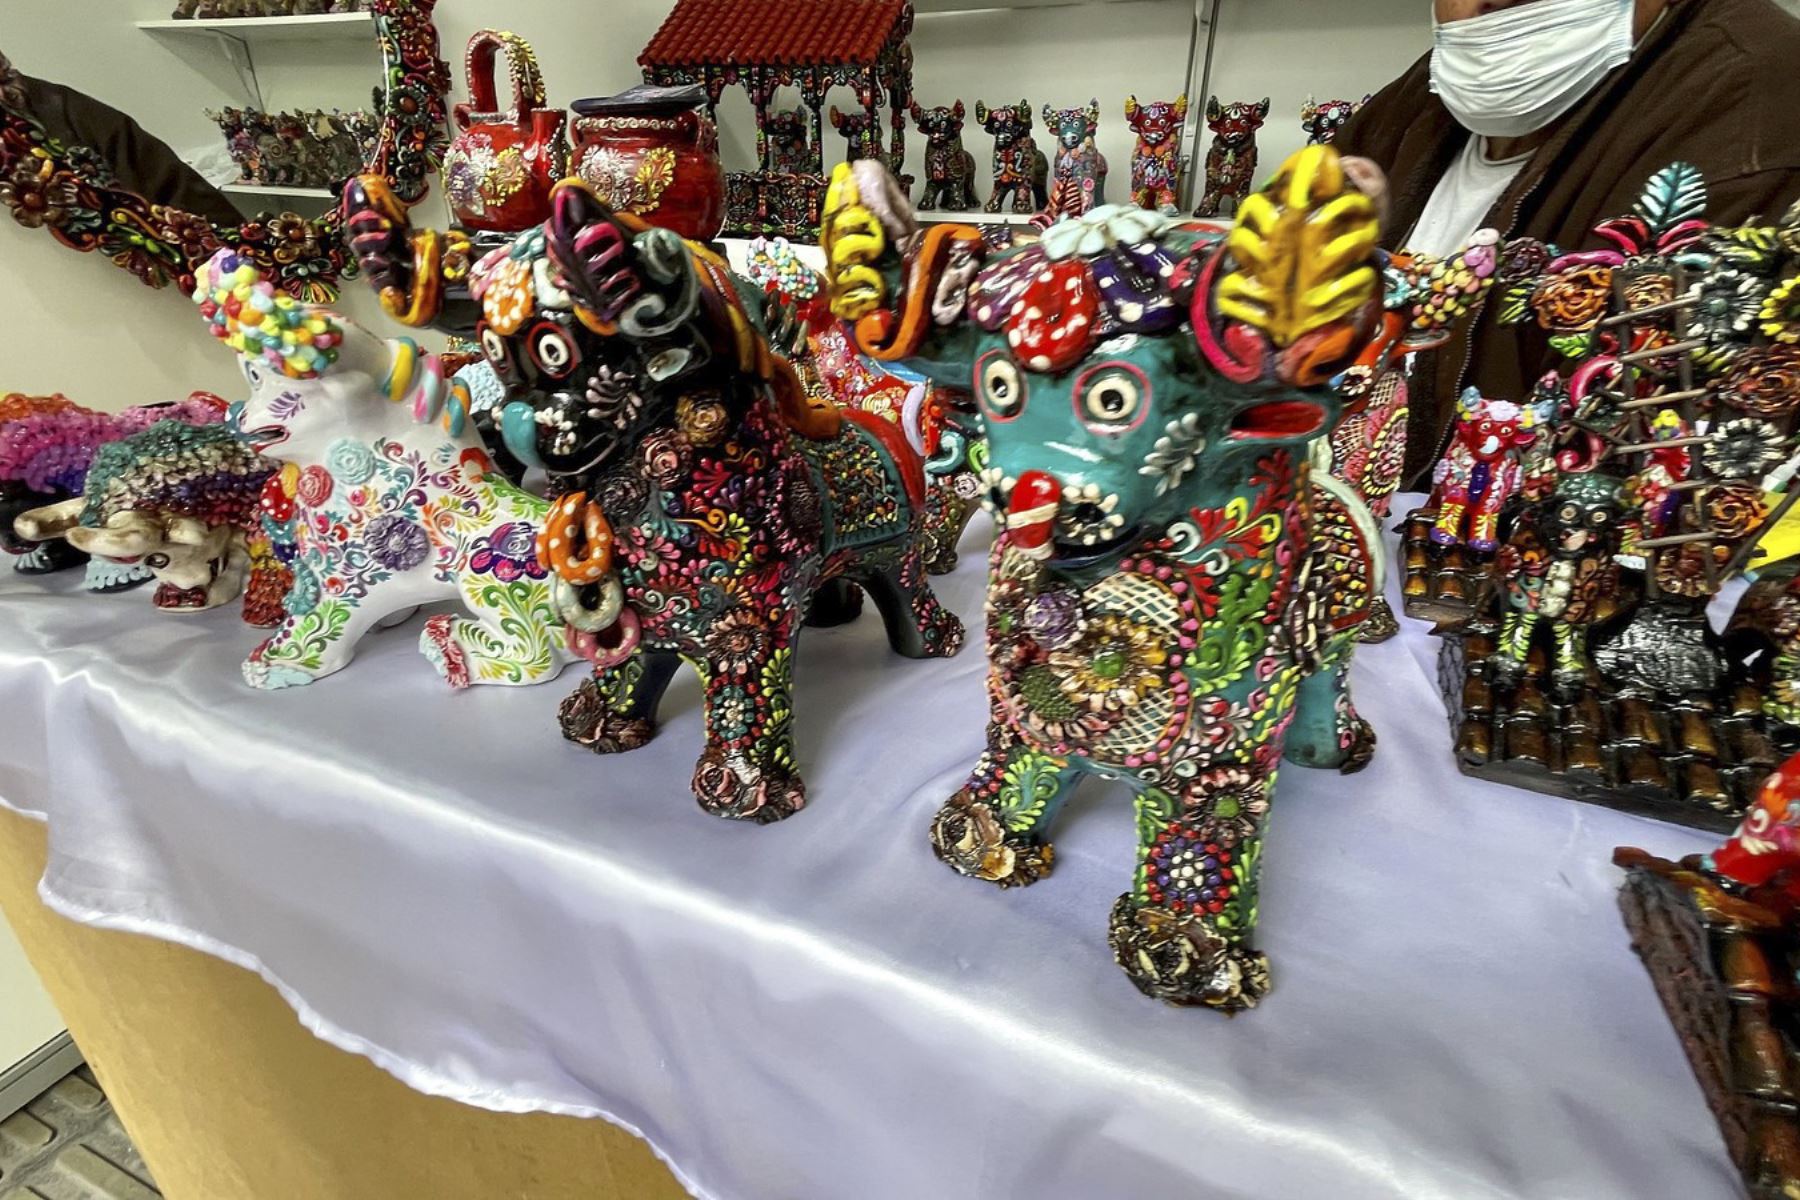 Se inauguró la Feria Nacional de Artesanía "De Nuestras Manos". La viceministra de Turismo de Mincetur, Isabel Álvarez inauguró la feria más importante del año que congrega a destacados artesanos a nivel nacional, incluidos los grandes amautas de la artesanía del Perú. Foto: Mincetur